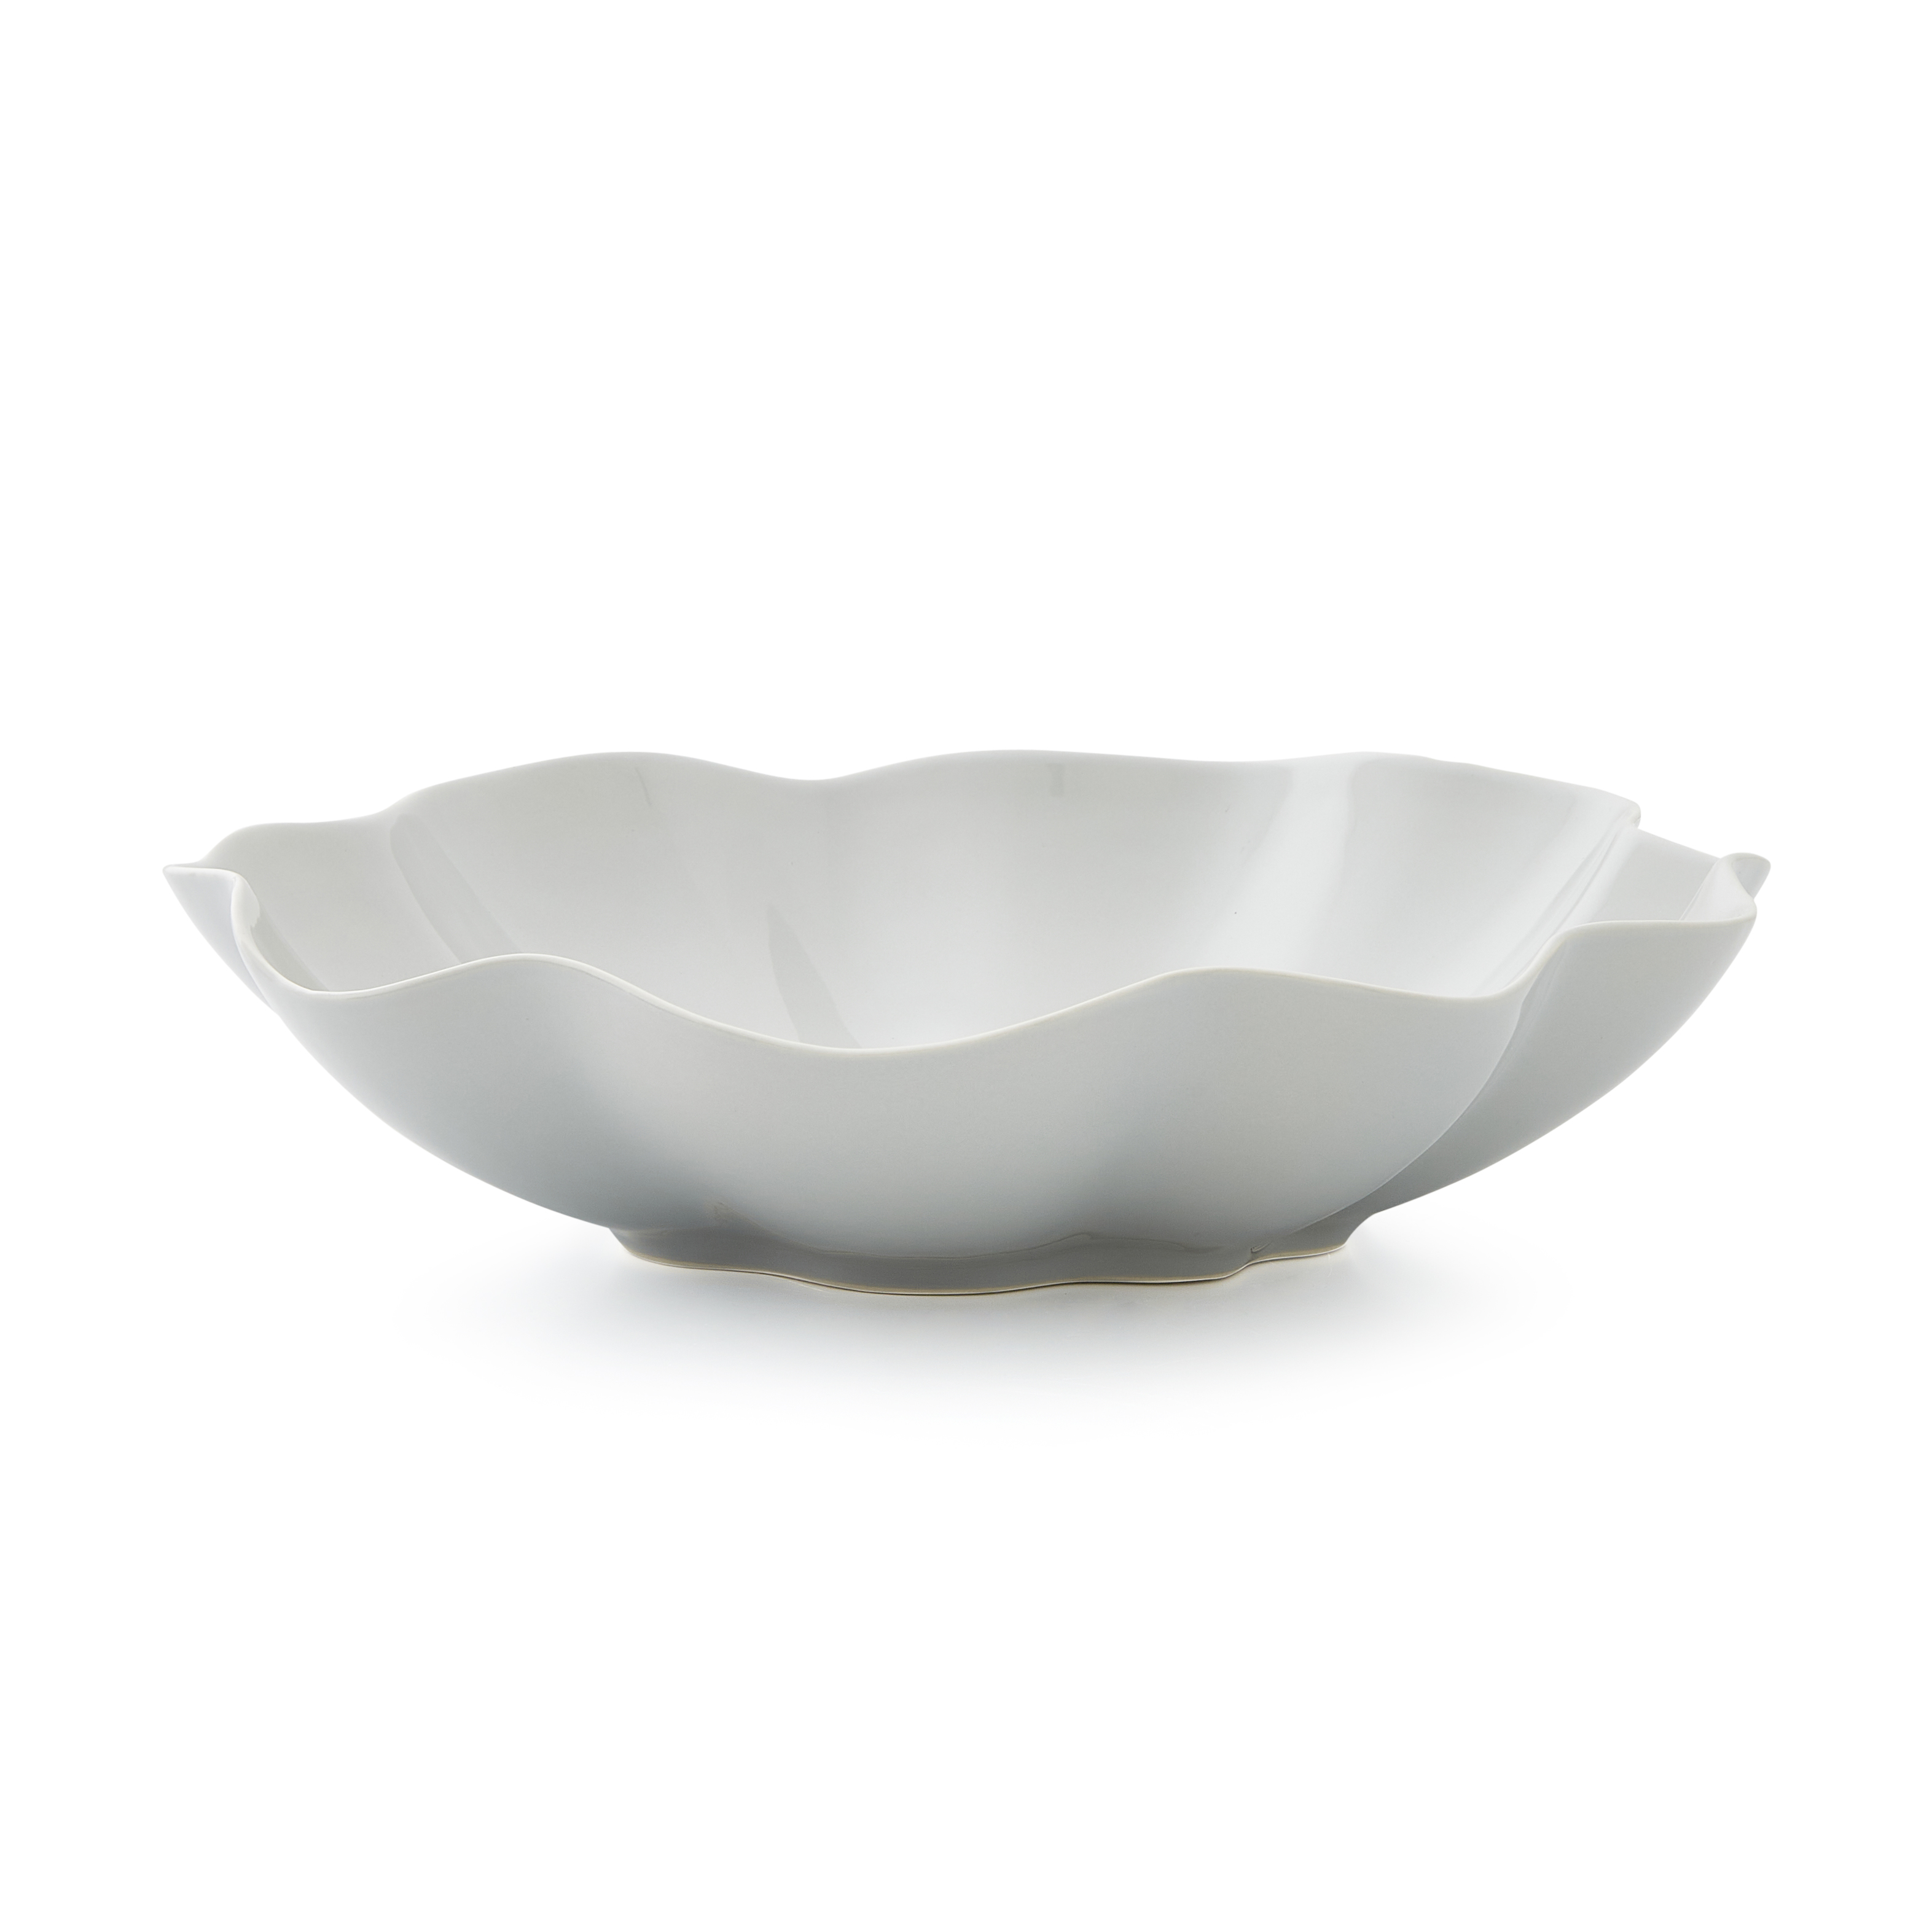 Sophie Conran Floret Large Serving Bowl-Dove Grey image number null